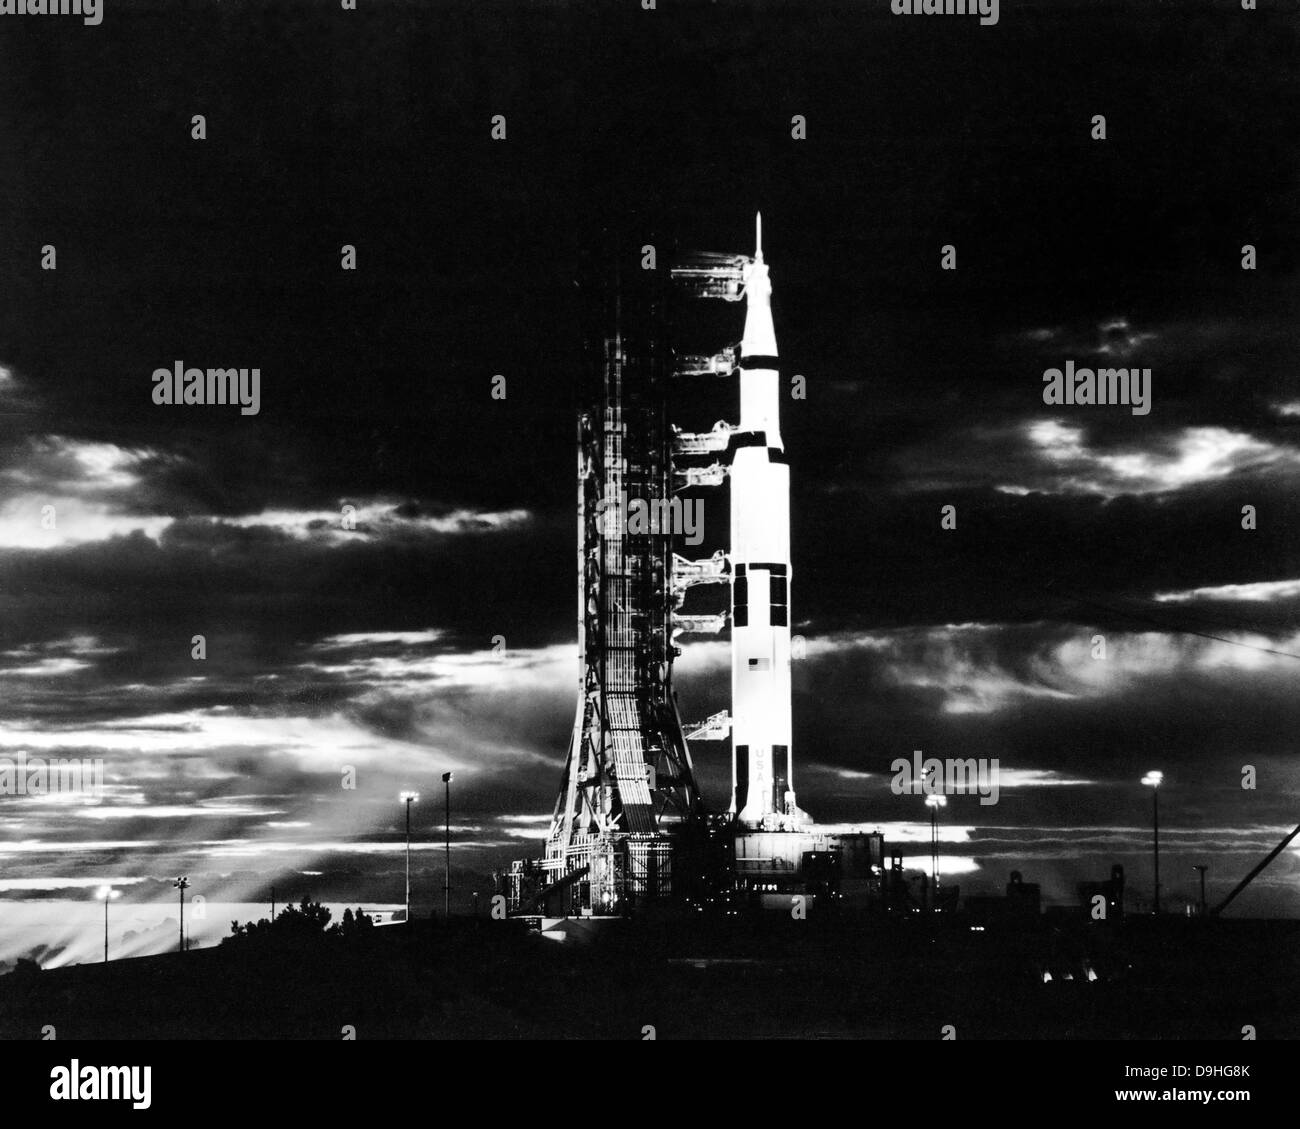 I proiettori illuminano questa visione notturna di Apollo 17 navicella spaziale sul proprio Launchpad. Foto Stock